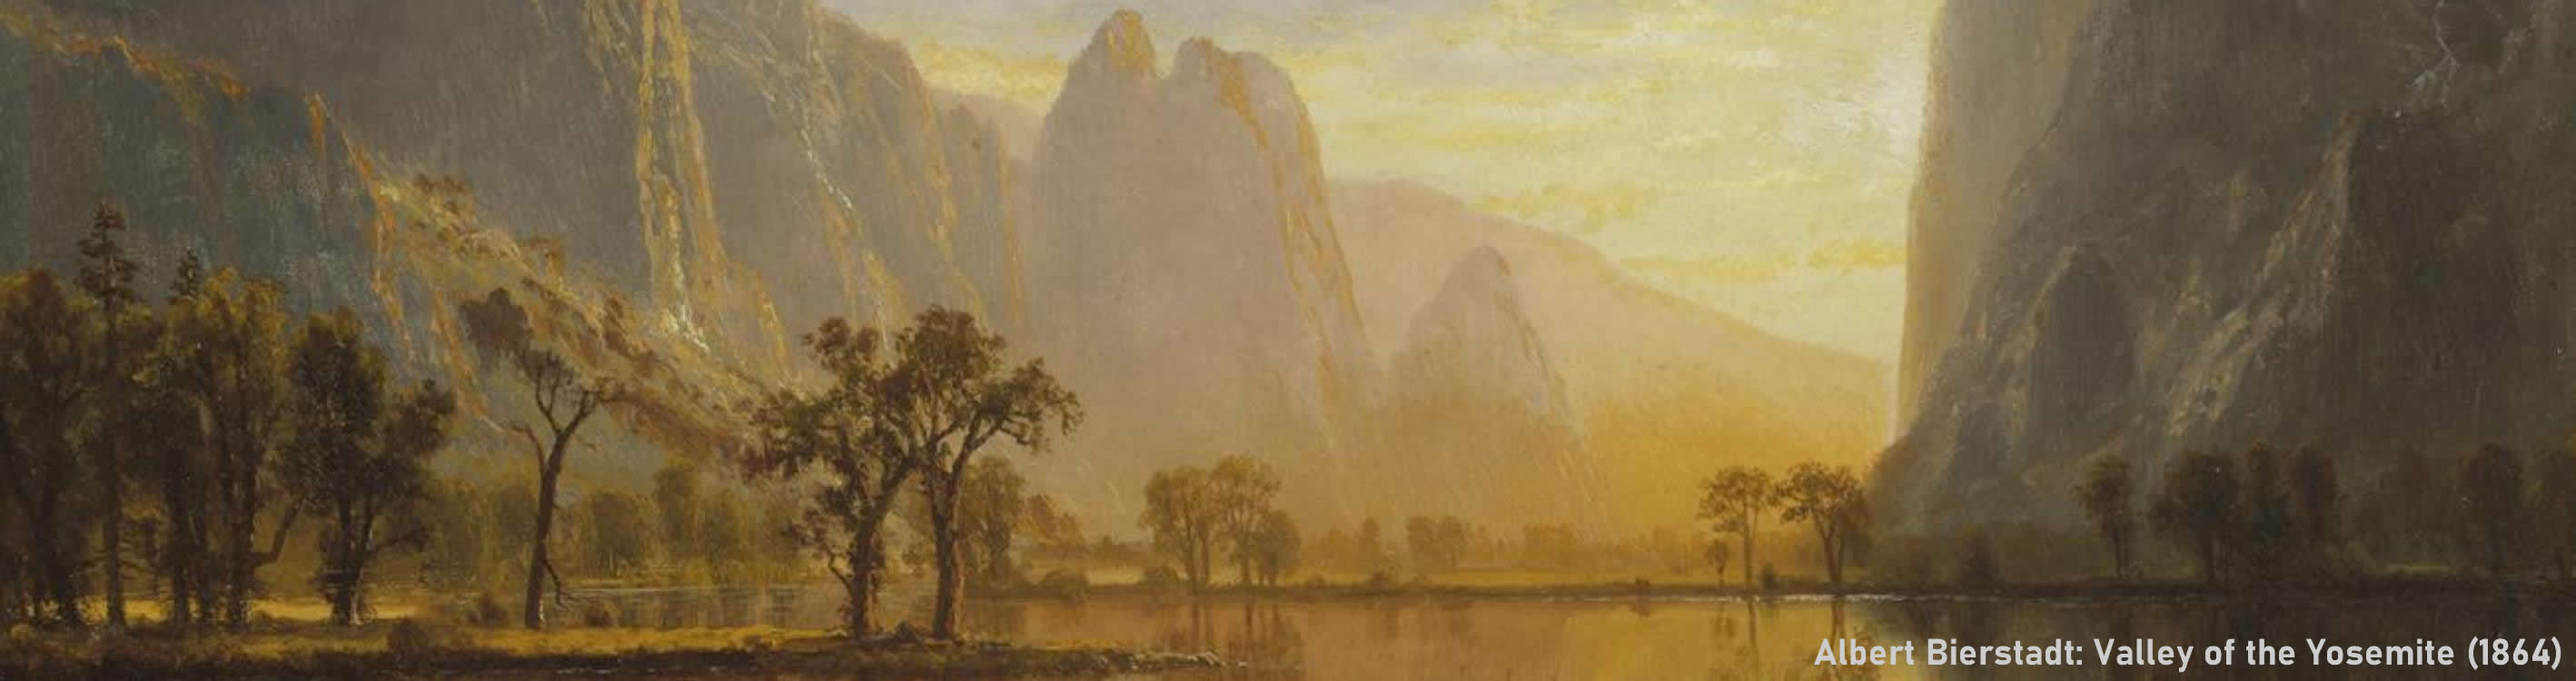 Albert Bierstadt: Valley of the Yosemite (1864)